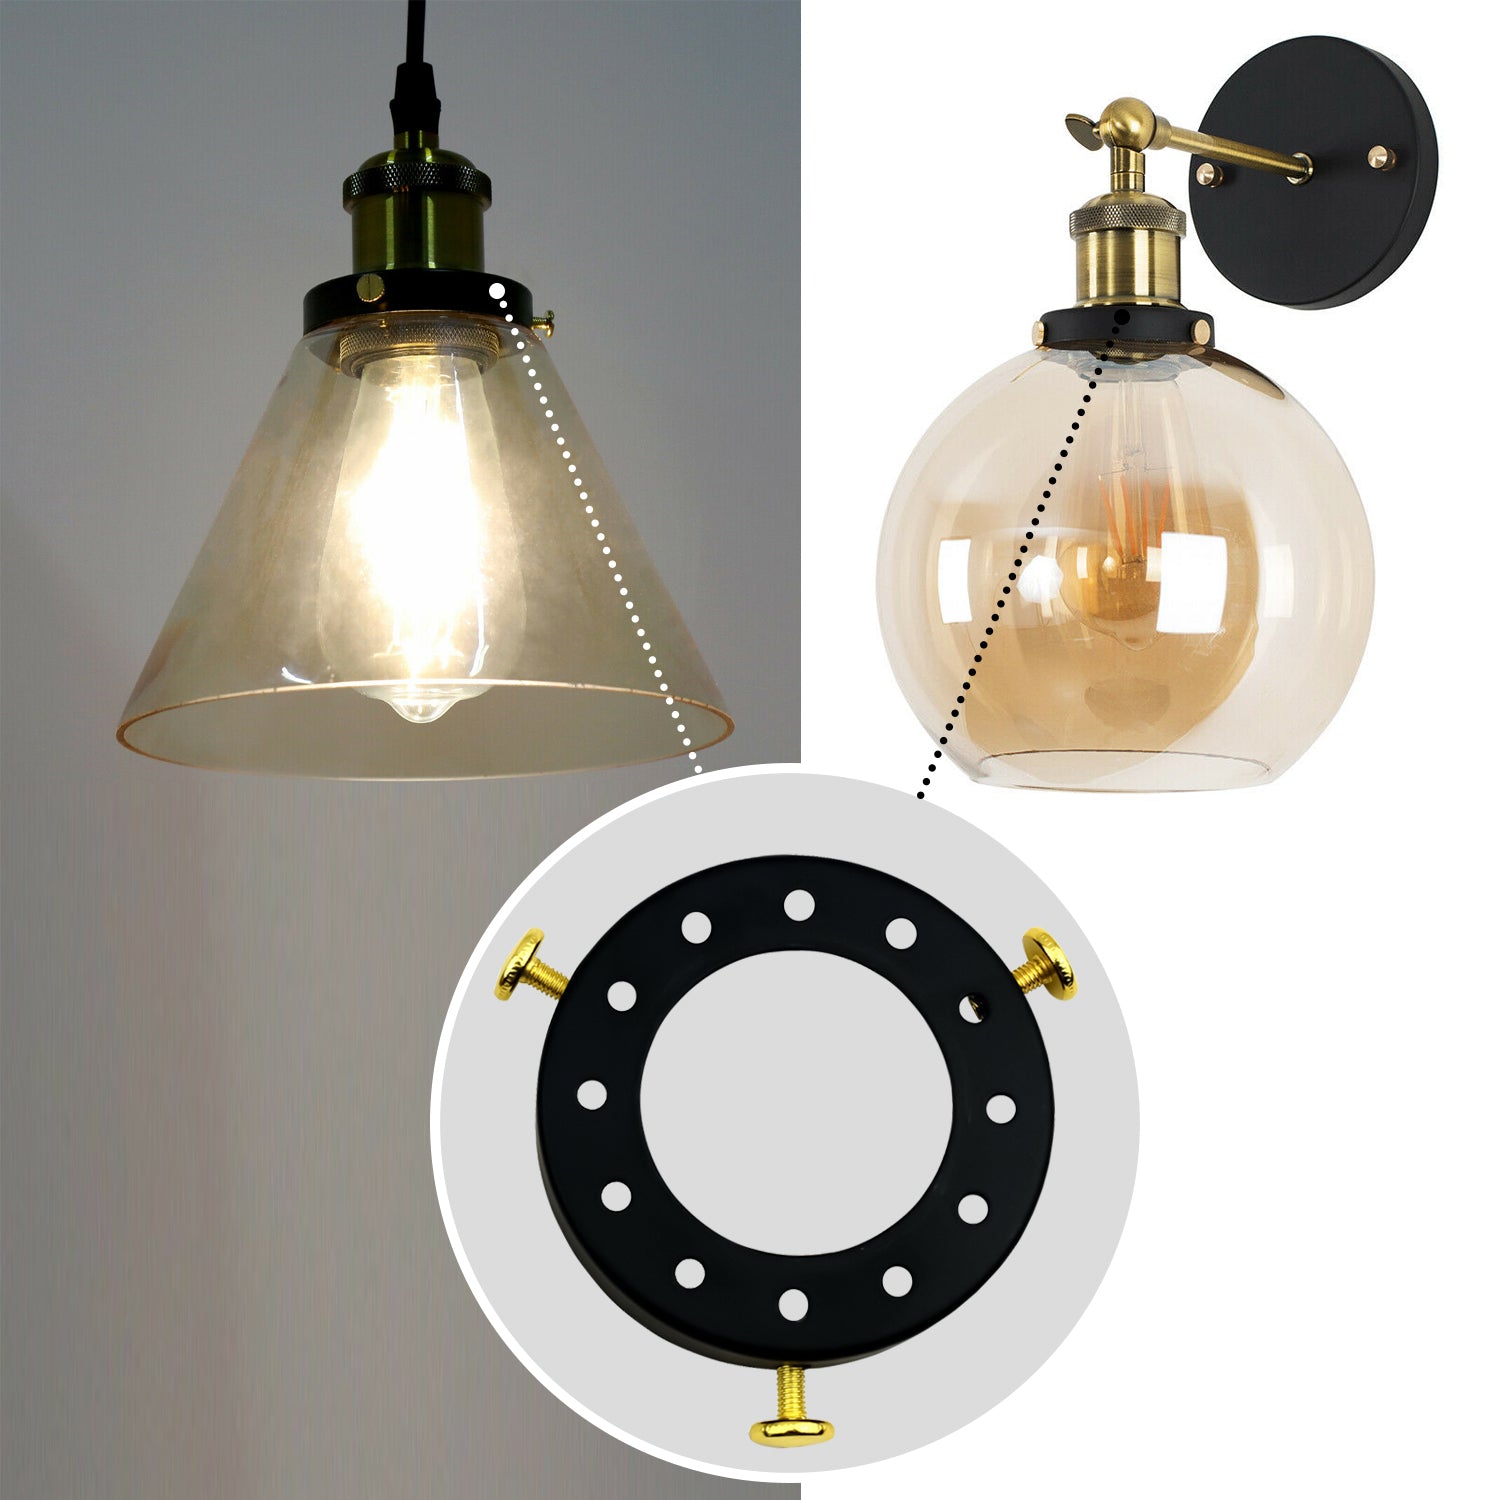 Lampenschirm aus Metall schwarz-weiße Kappe für Pendelleuchten-Fassungshalter